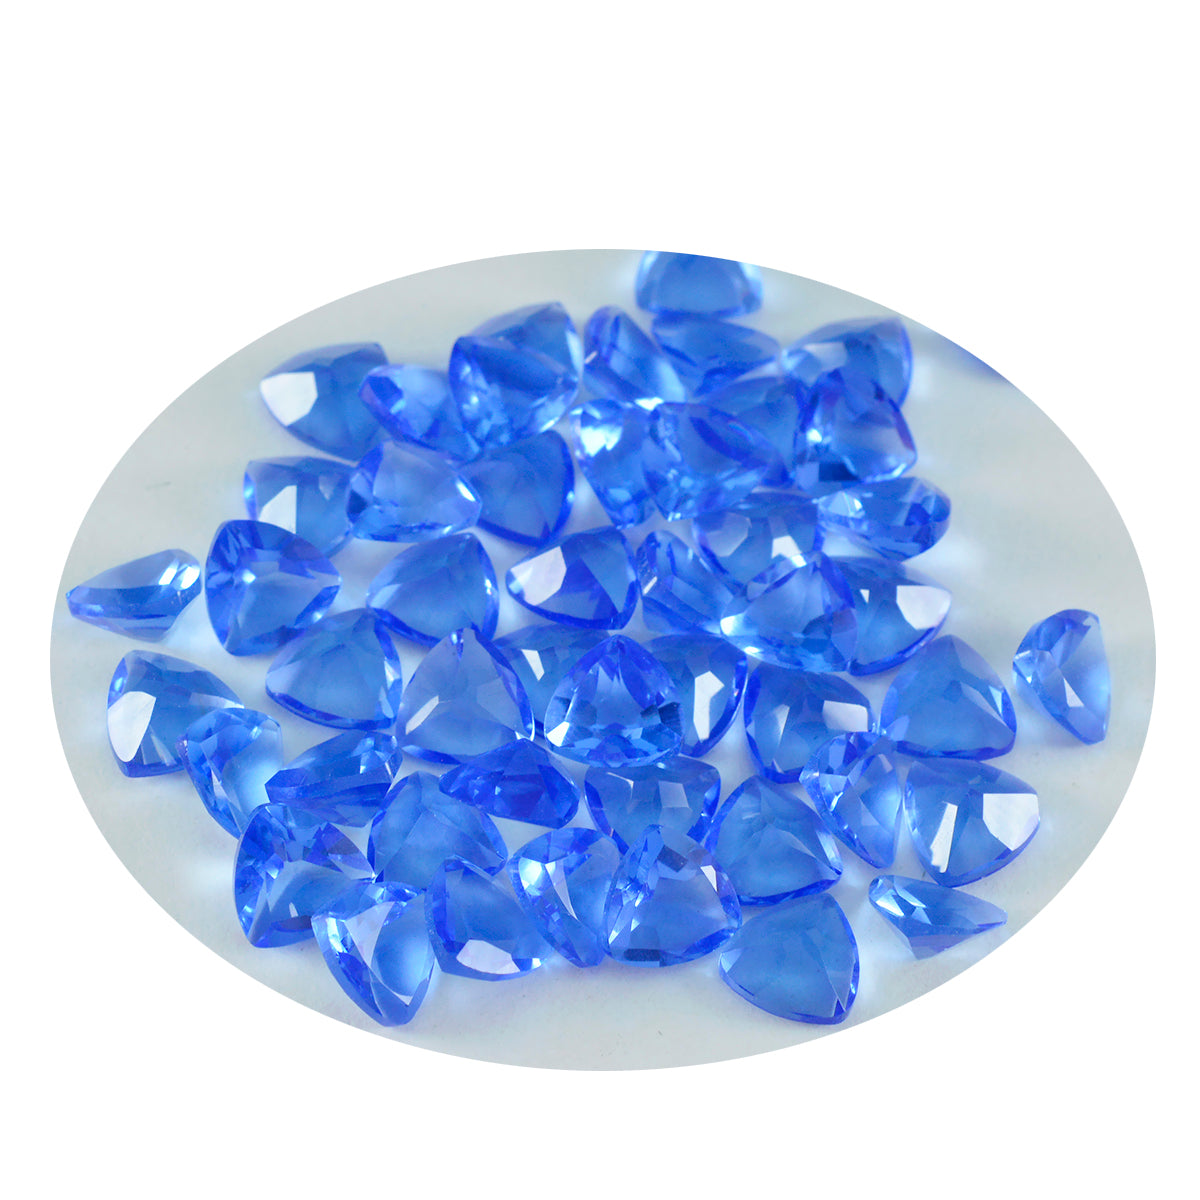 Riyogems 1pc saphir bleu cz facettes 8x8mm forme trillion merveilleuse qualité pierre précieuse en vrac